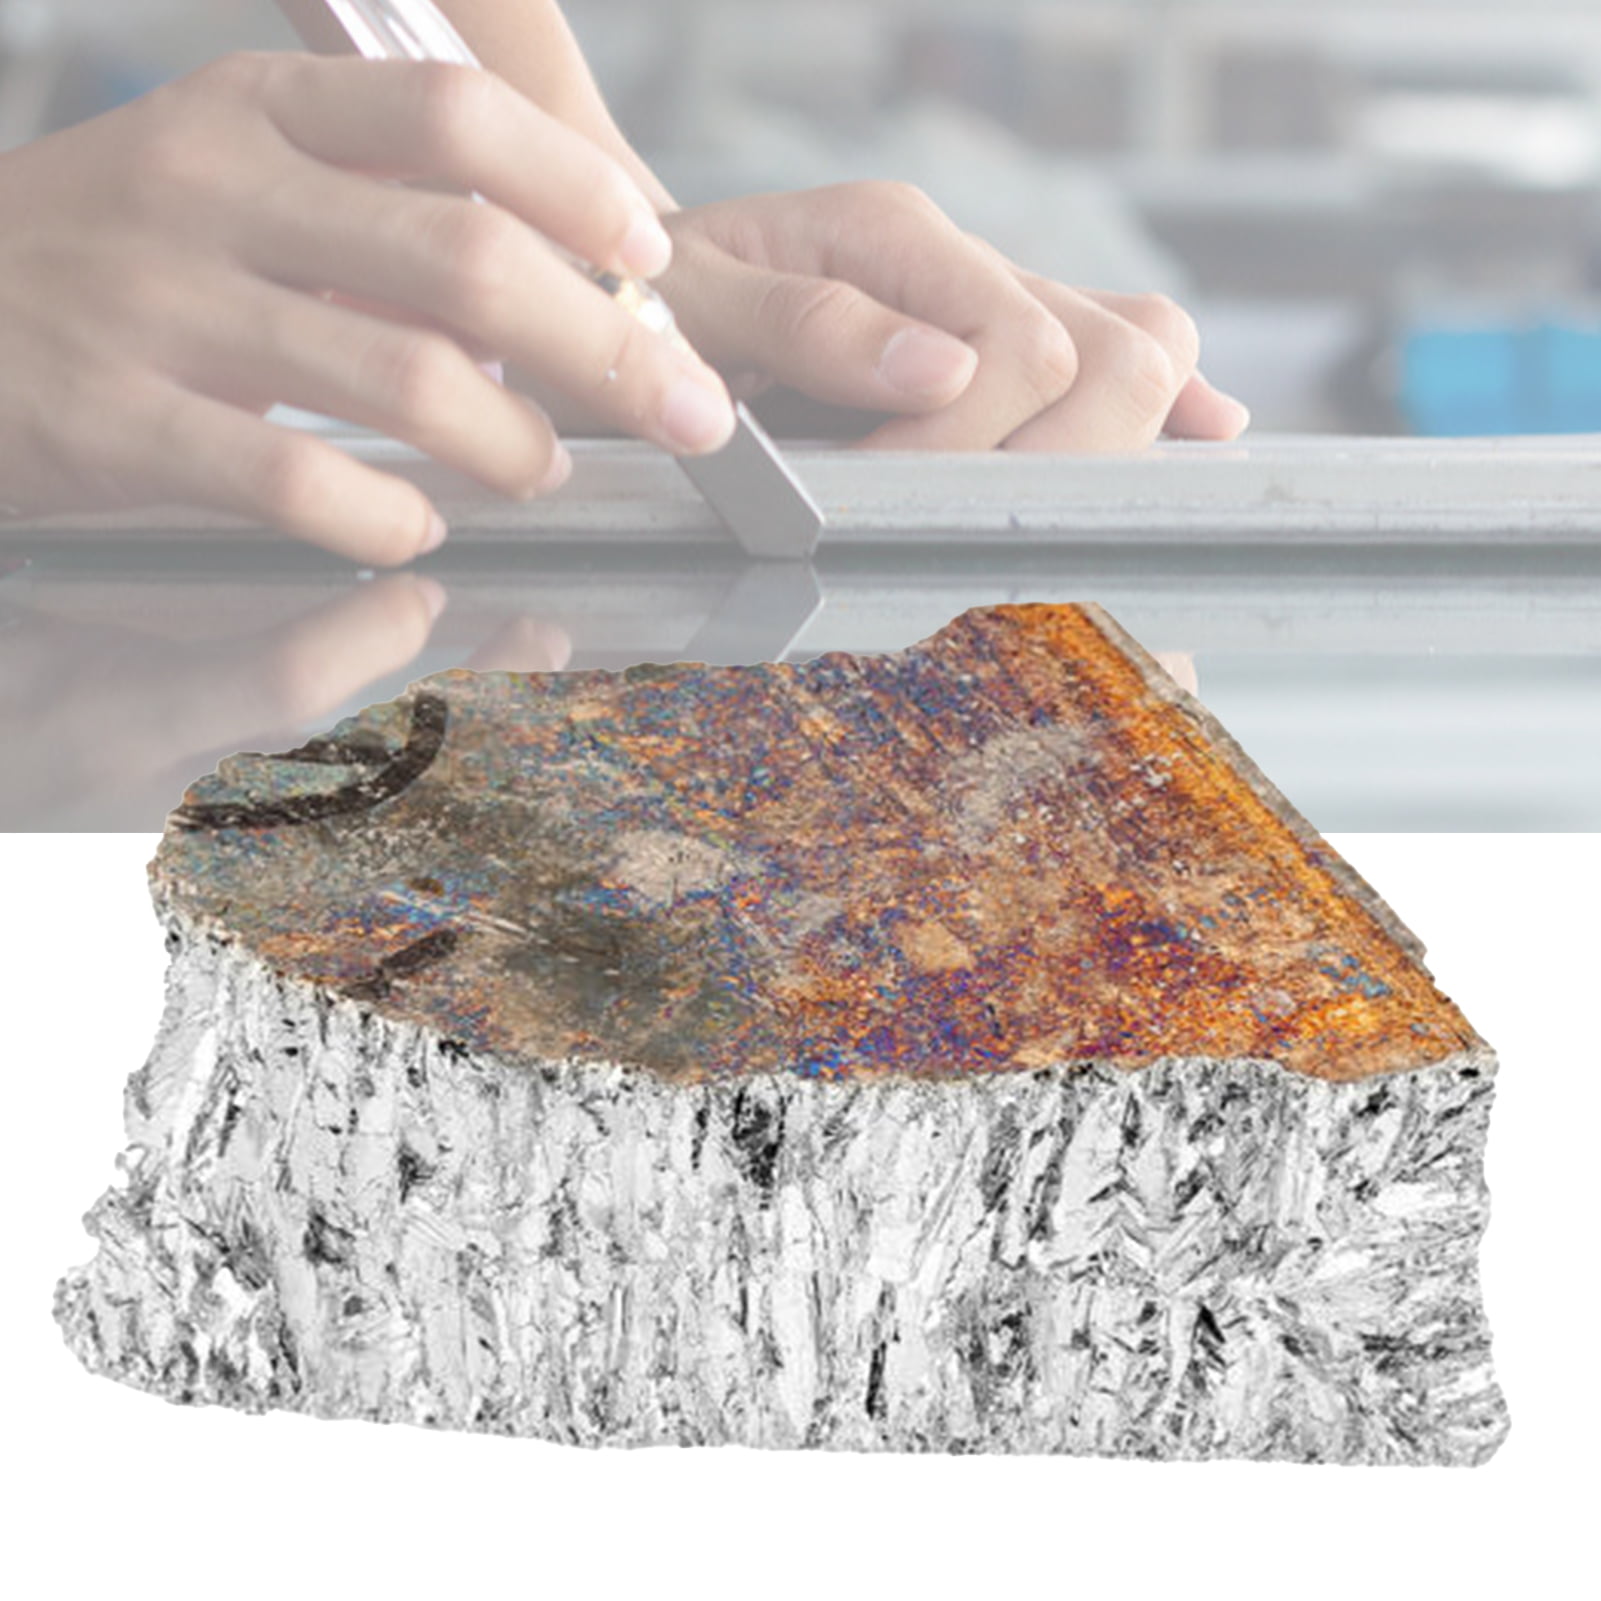 1kg Bismuth Metal Irregular Shape Diamagnetic Elementary Substance